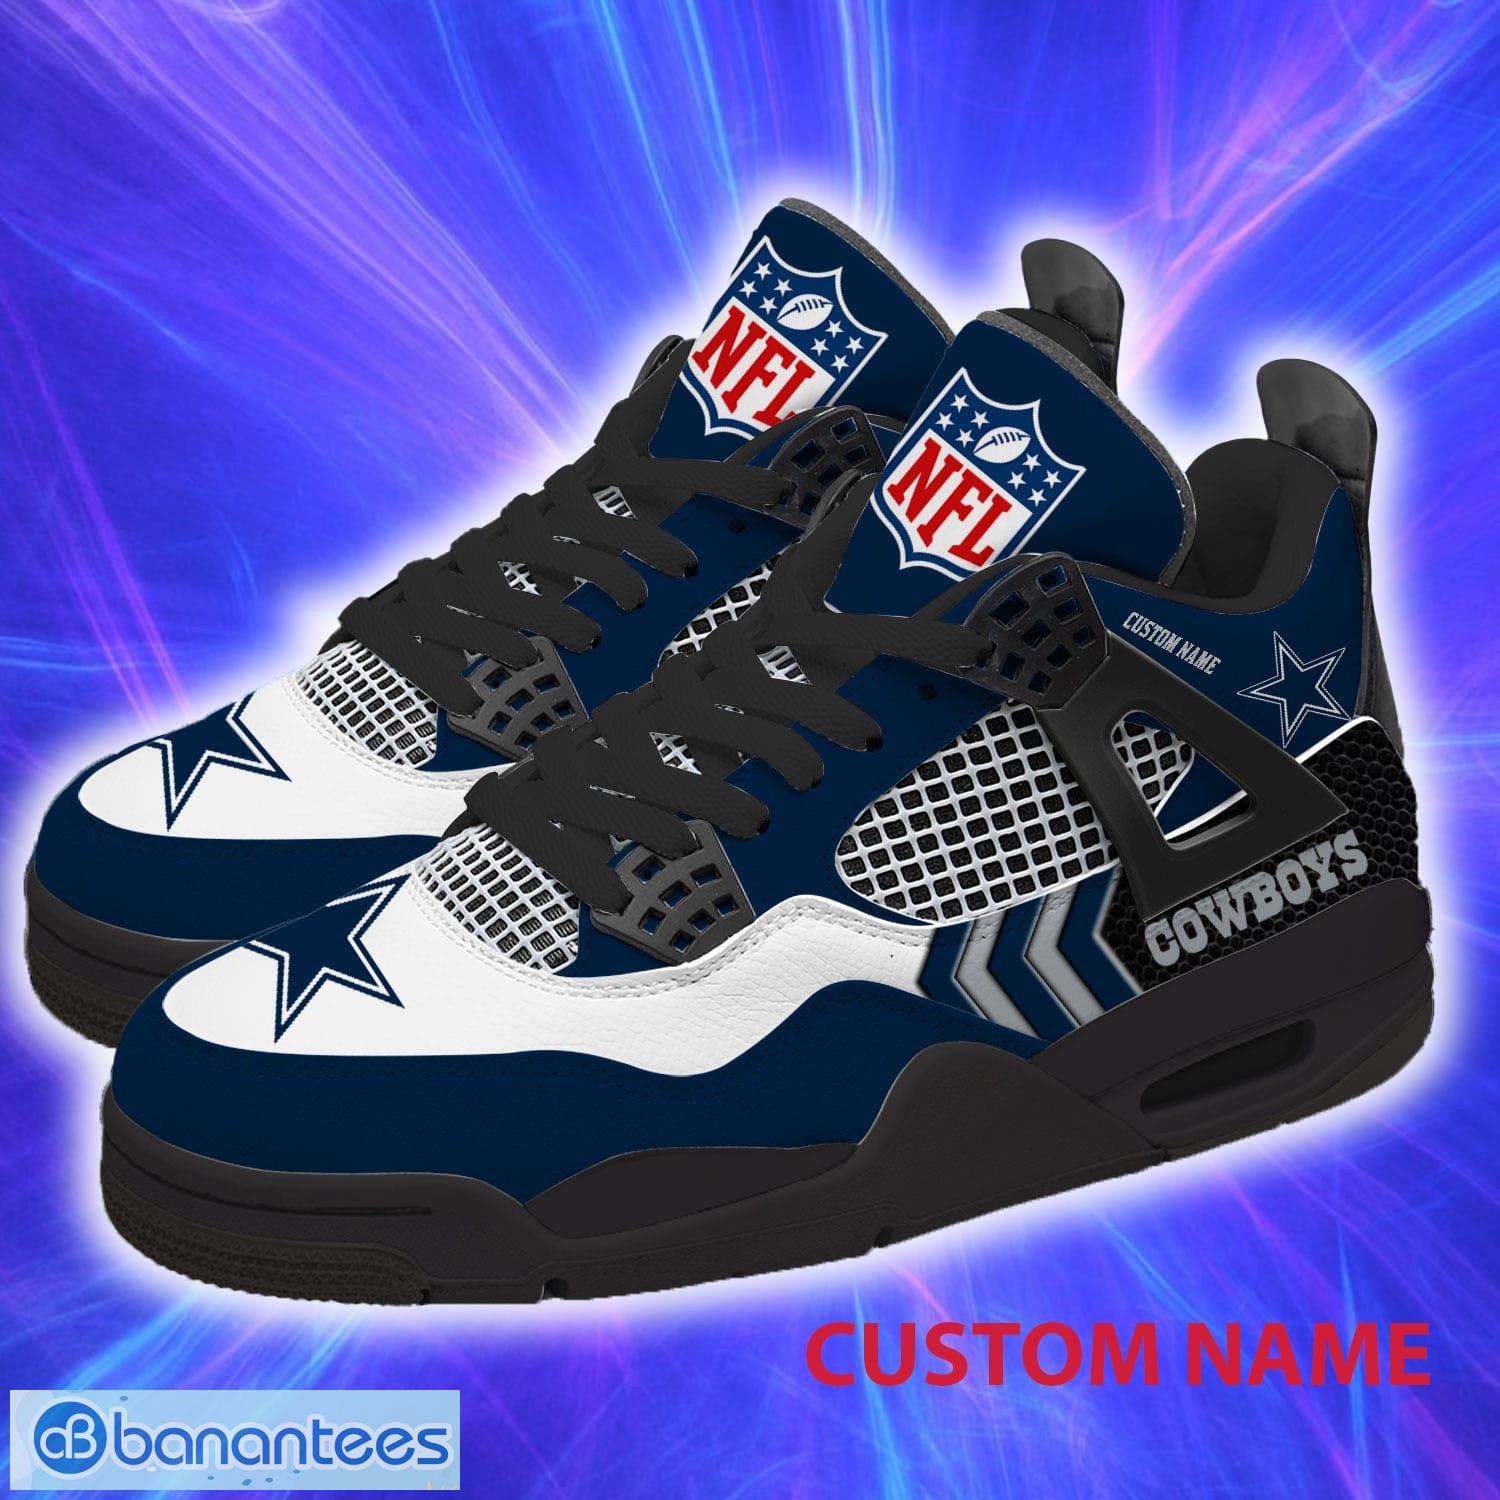 Custom Name Dallas Cowboys NFL Air Jordan 4 Sneakers For Men And Women Unisex Running Shoes - Custom Name Dallas Cowboys NFL Collection Air Jordan 4 Unisex Sneakers Running For Men And Women Gift